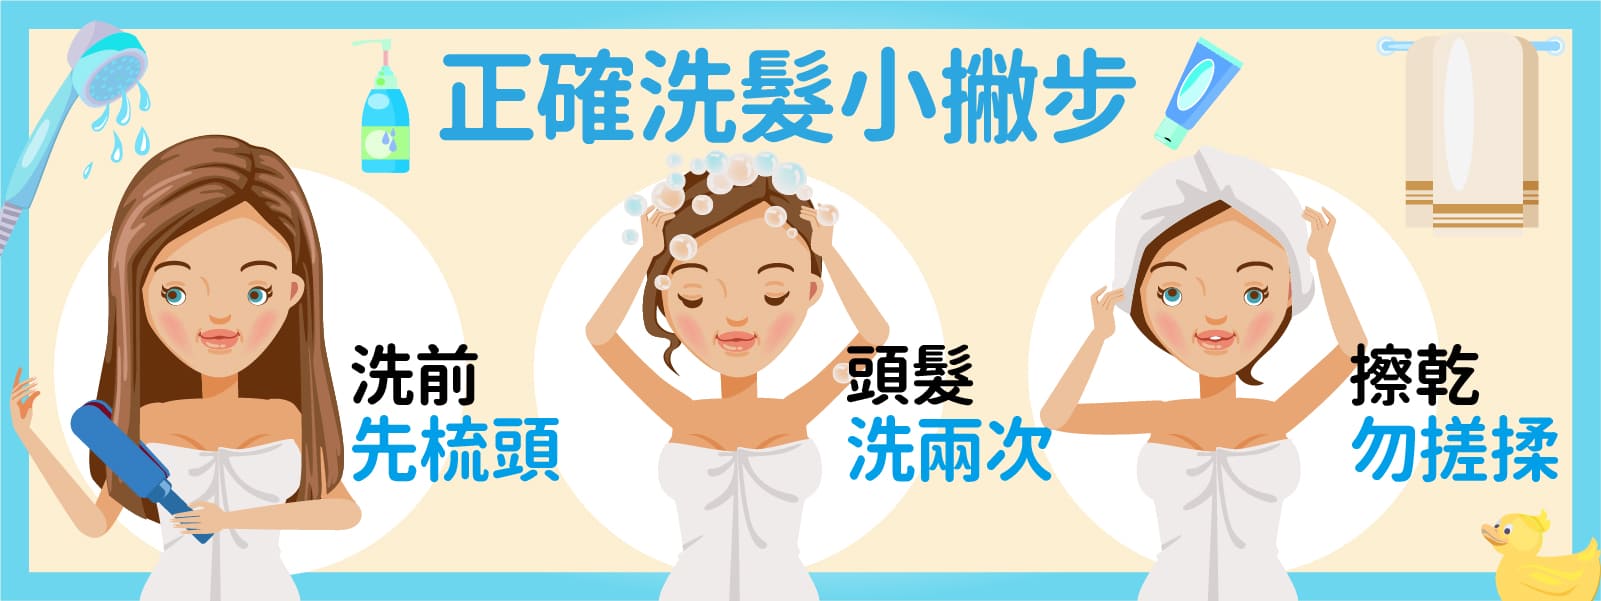 正確洗頭步驟，洗頭前先梳頭，頭髮洗兩次，洗完頭髮用擦乾的方式，勿搓揉頭髮